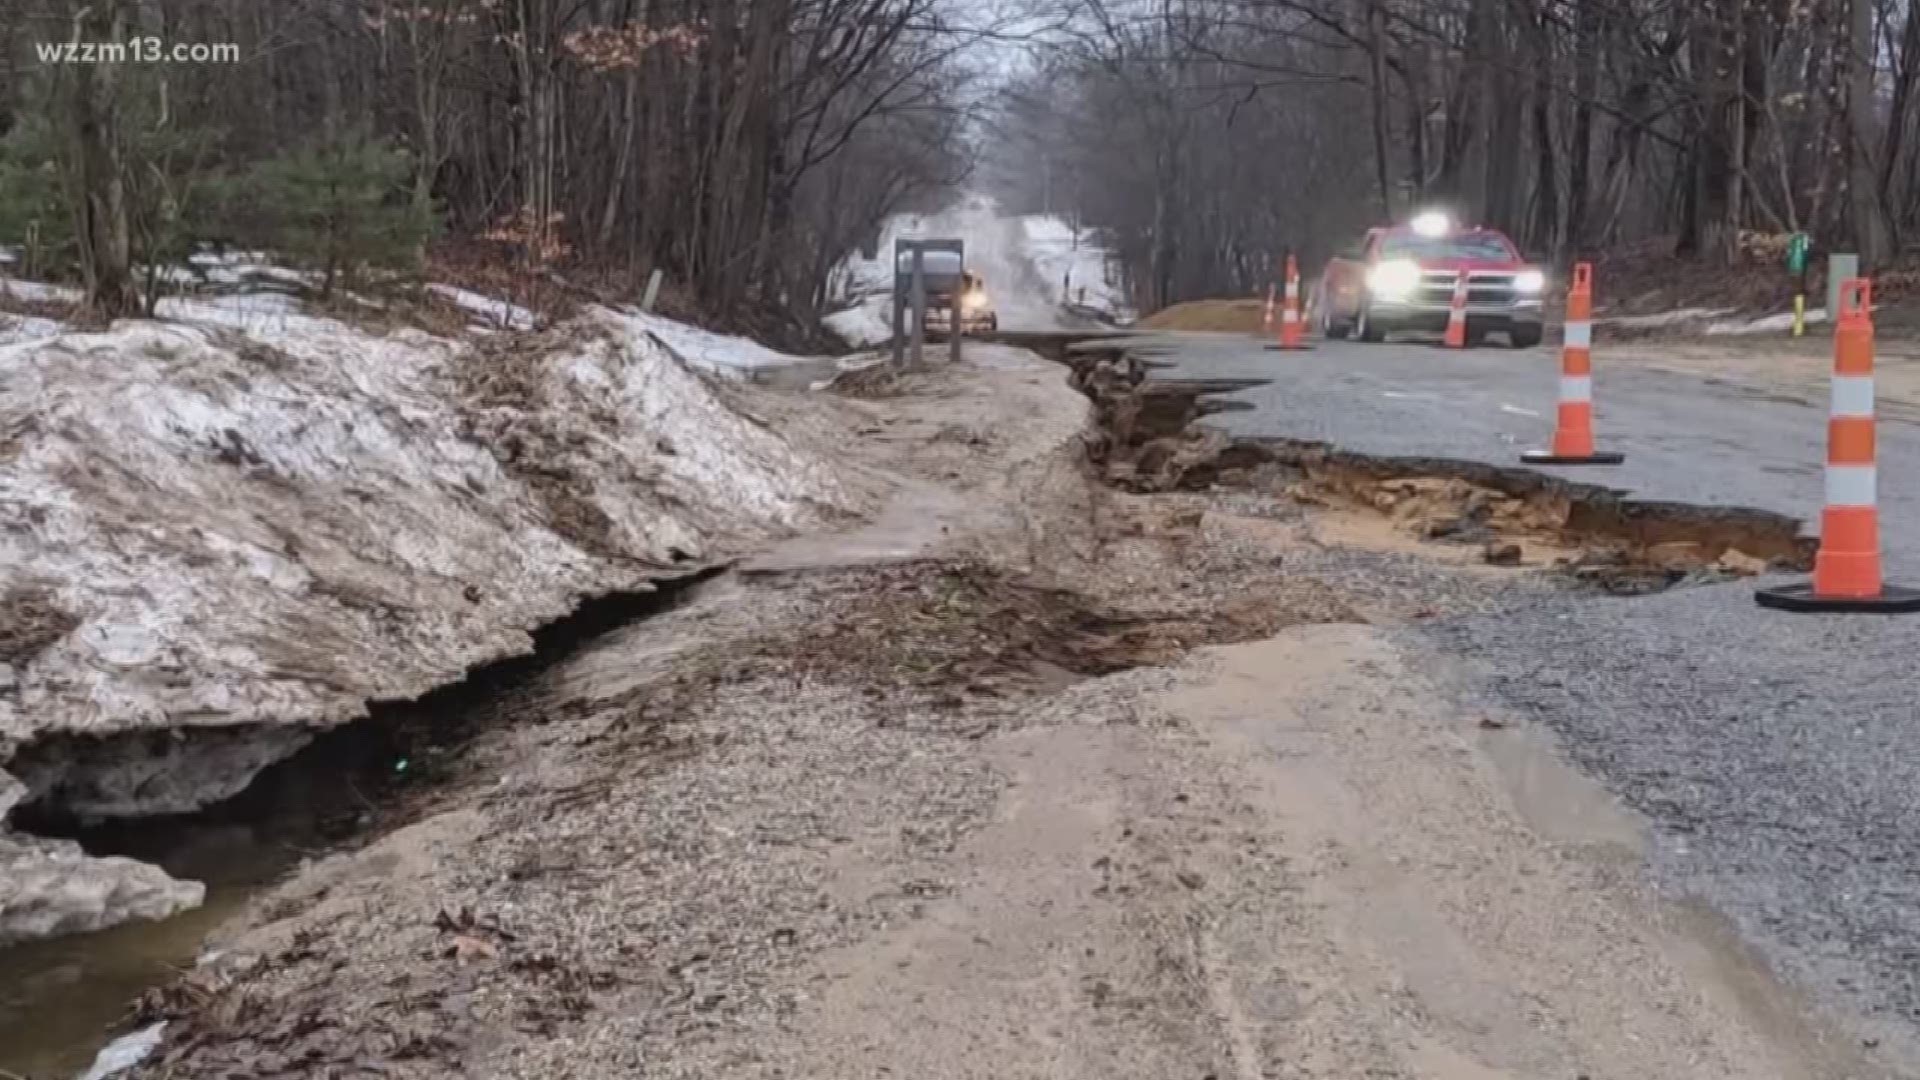 Ottawa County gravel roads hit by tough winter